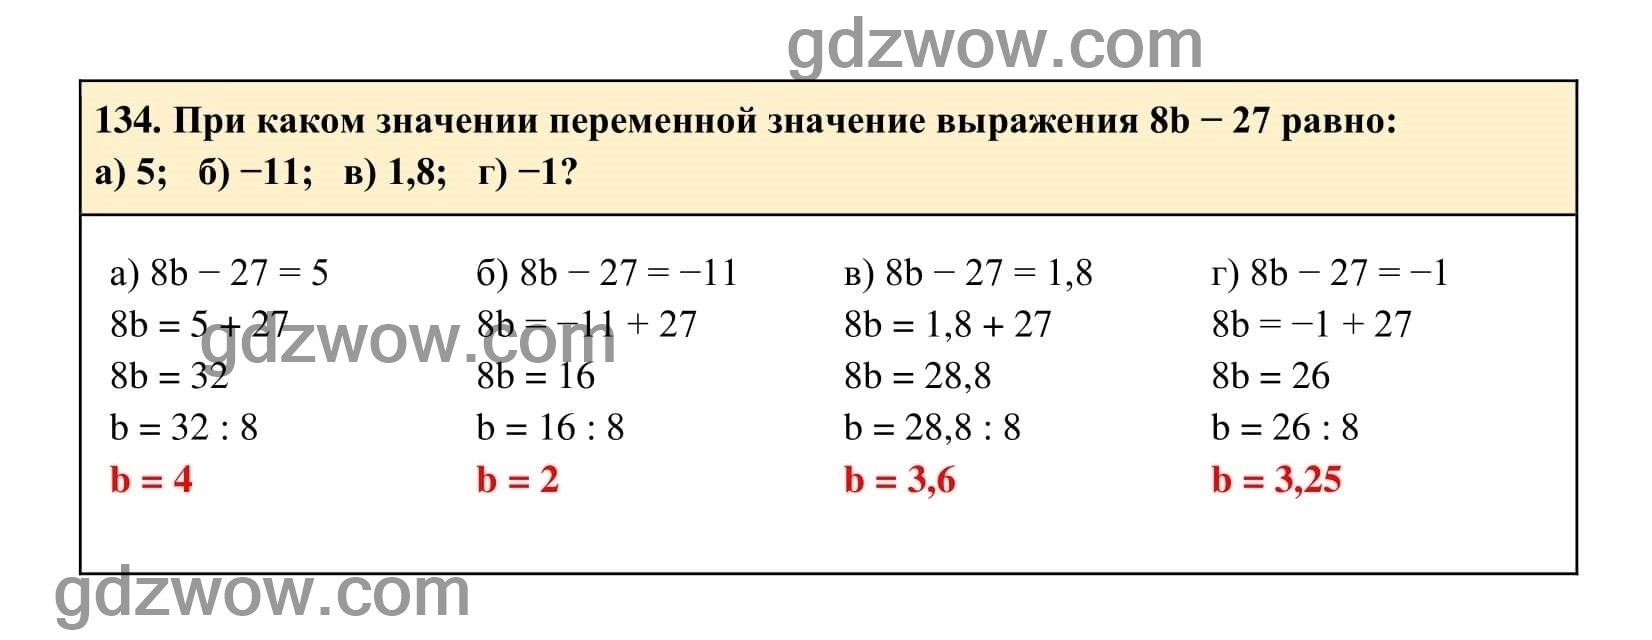 Упражнение 134 - ГДЗ по Алгебре 7 класс Учебник Макарычев (решебник) - GDZwow